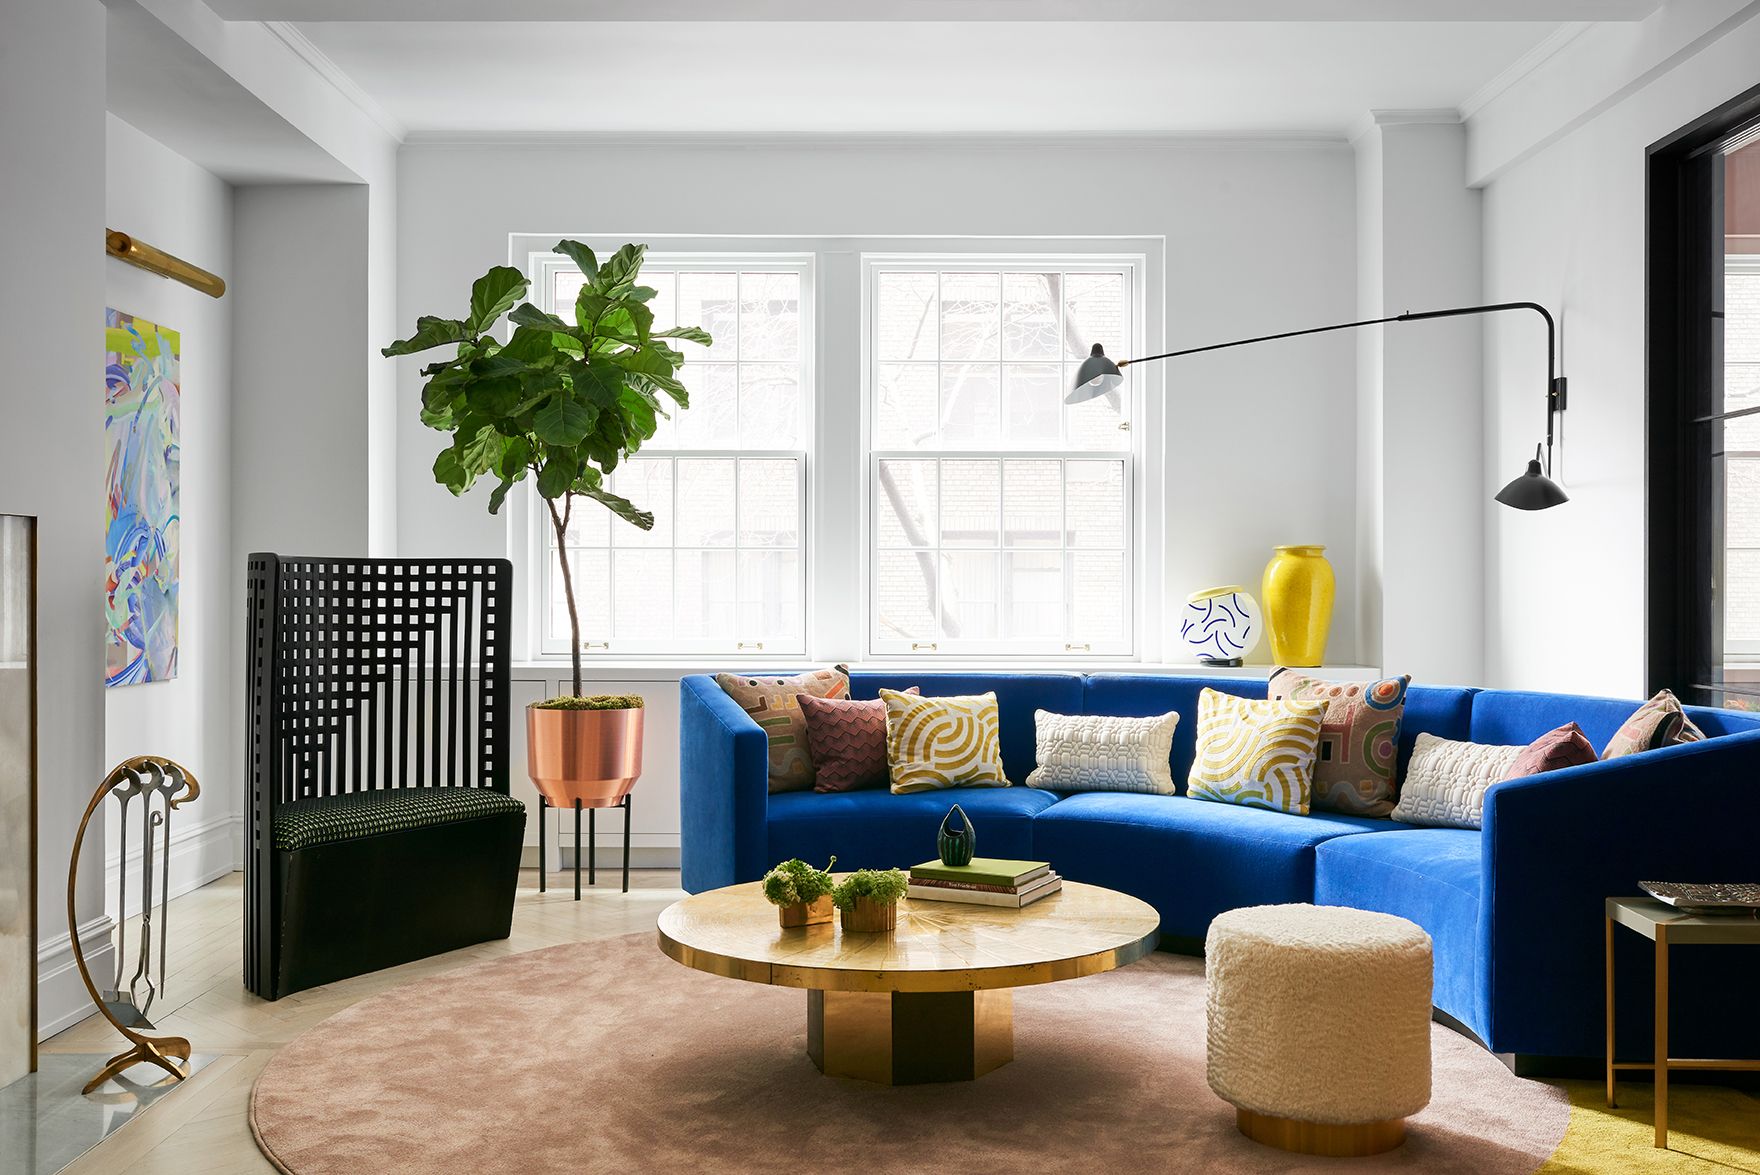 Ideas de decoración para colocar bien los cojines del sofá